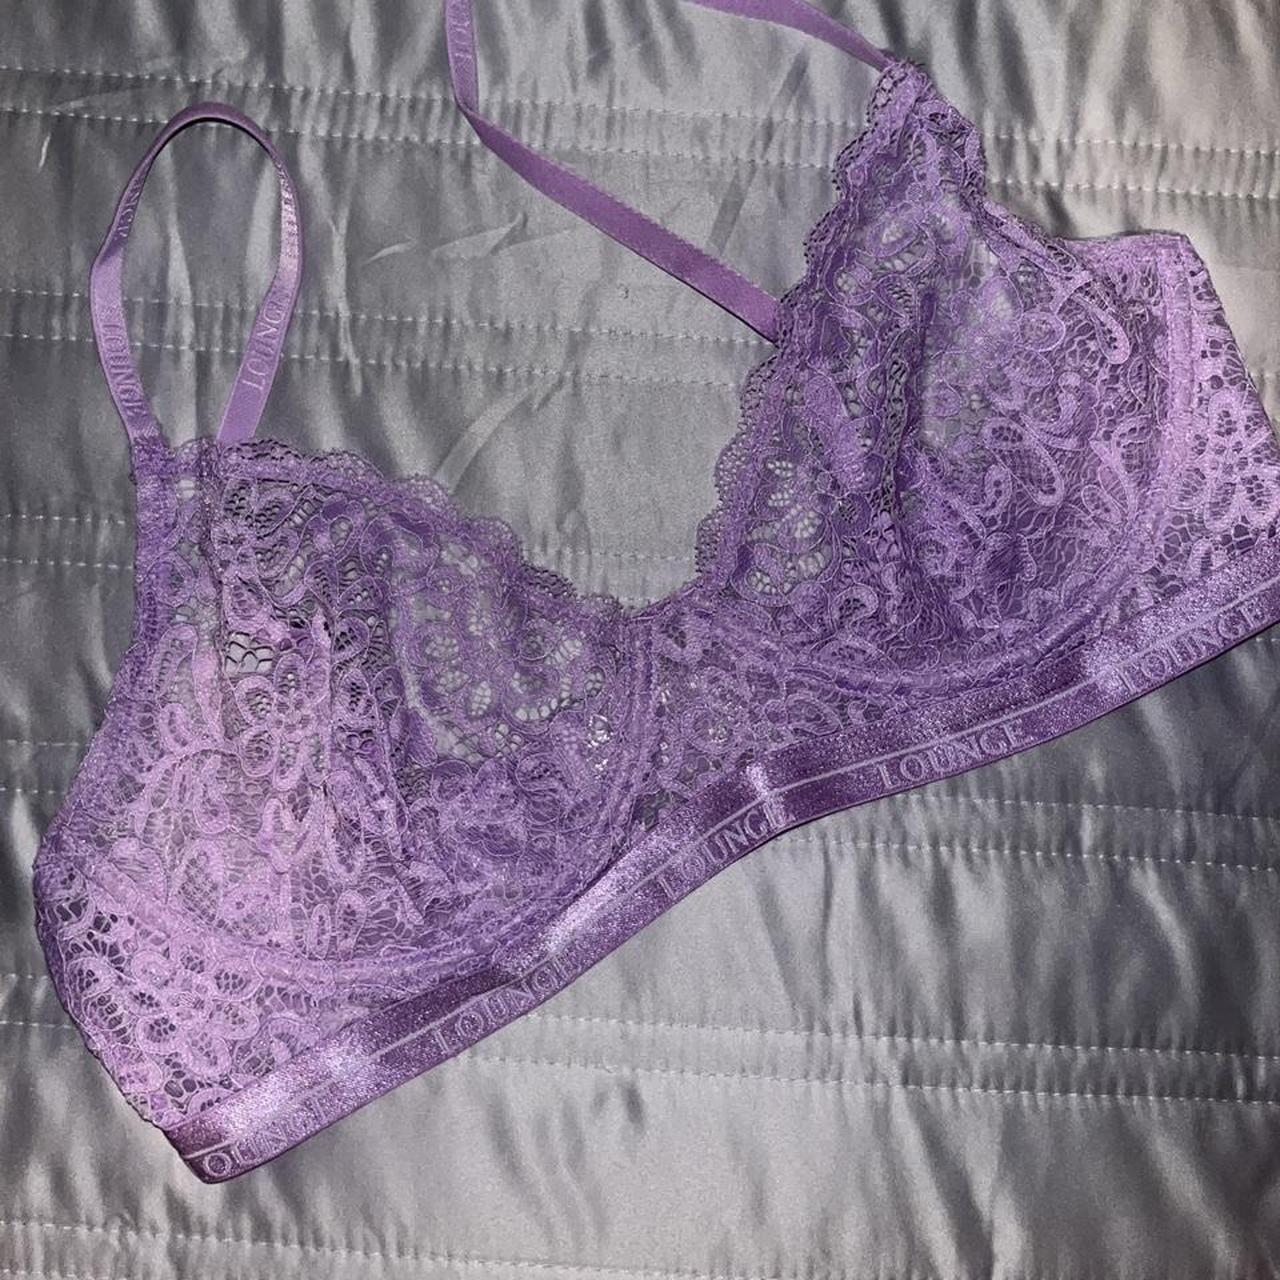 Lounge underwear balcony bra in lilac • Perfect... - Depop